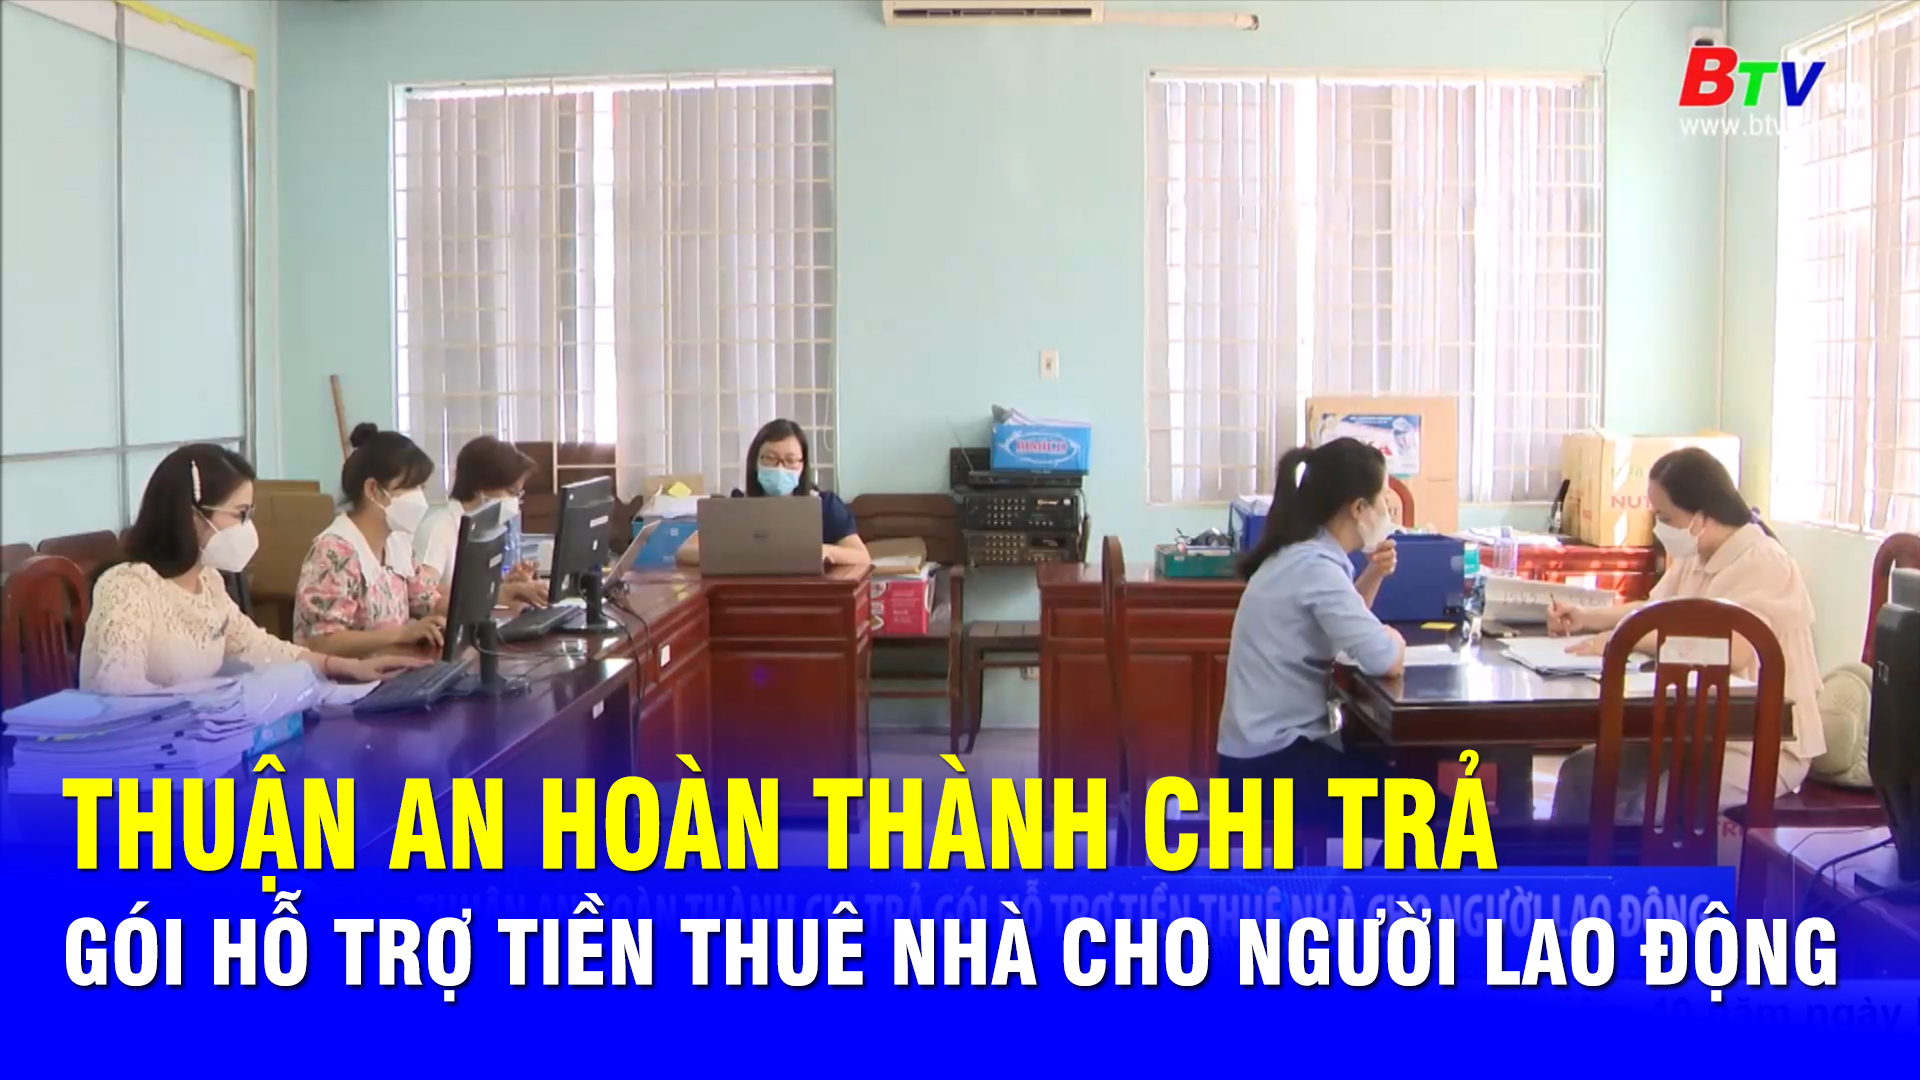 Thuận An hoàn thành chi trả gói hỗ trợ tiền thuê nhà cho người lao động